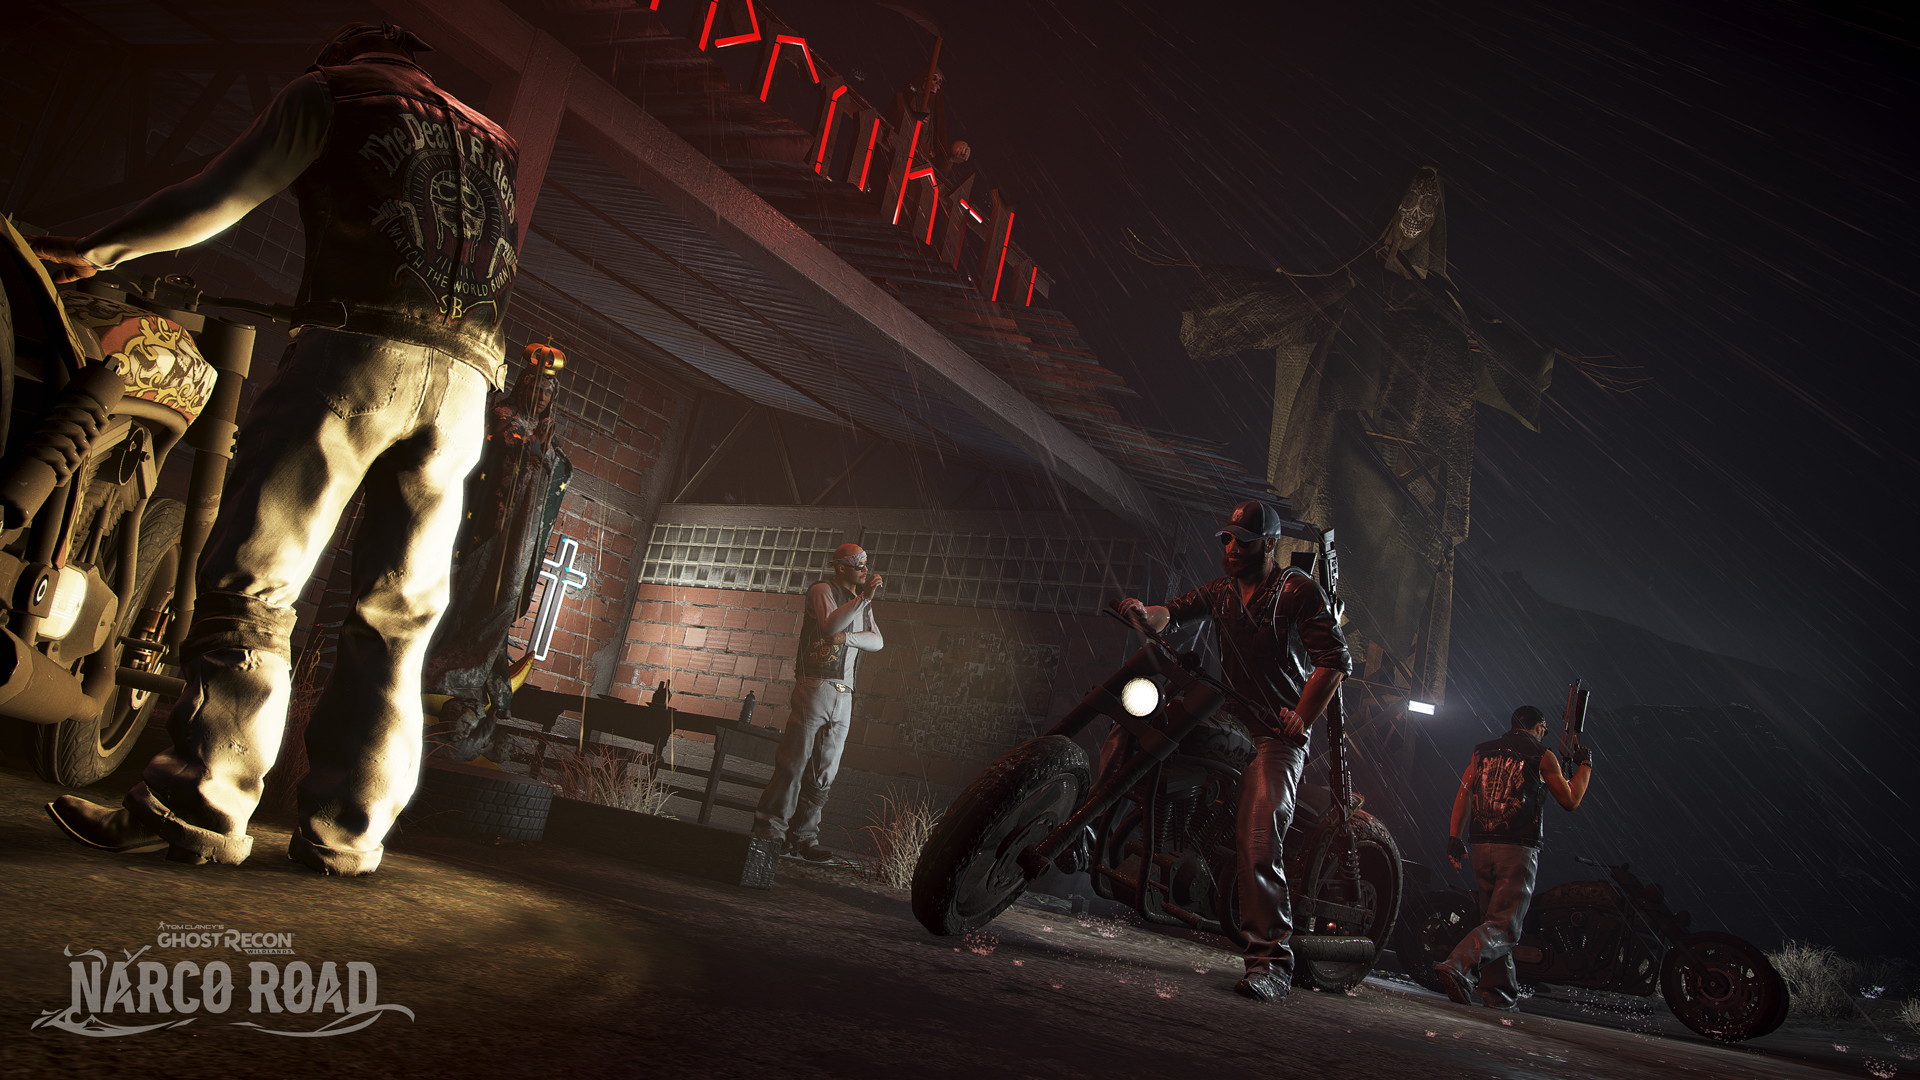 Ghost Recon: Wildlands - Narco Road - screenshot 6